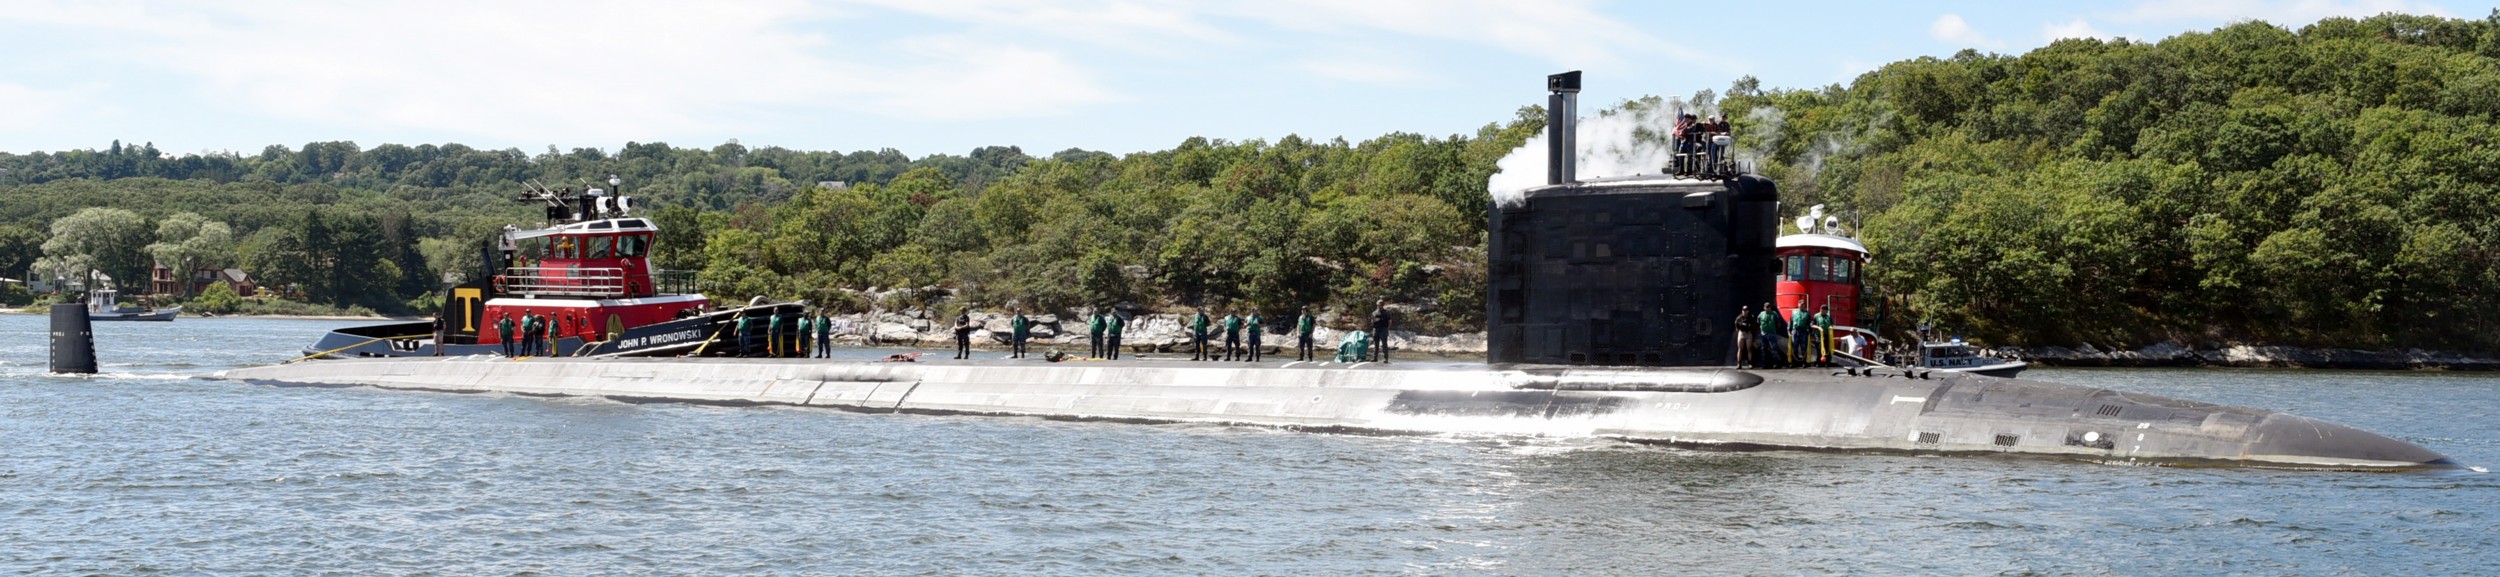 ssn-786 uss illinois virginia class attack submarine us navy 08 subase new london groton